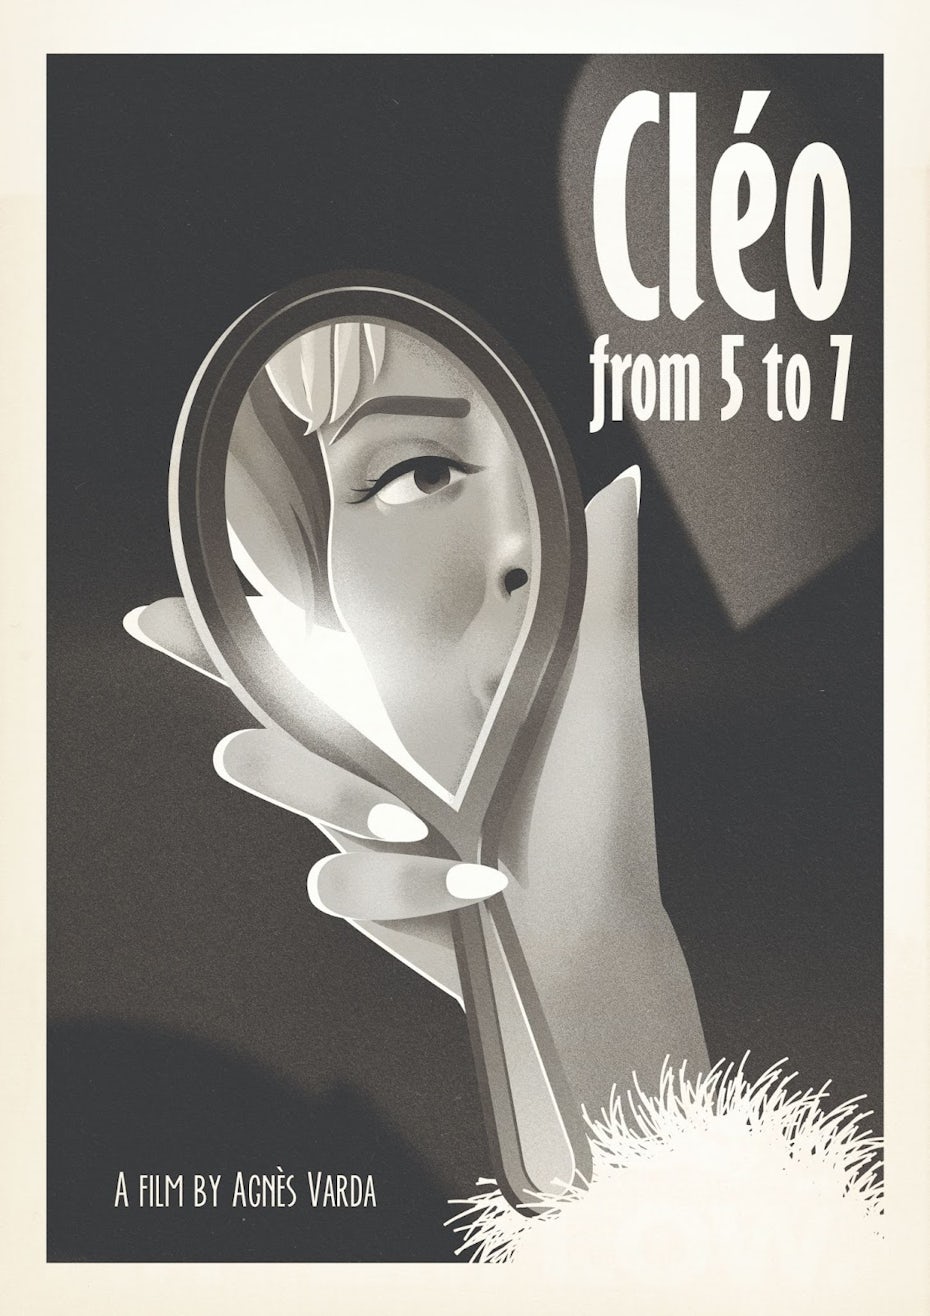 Un des designs d'affiches de films des années 60 pour "Cléo de 5 à 7"